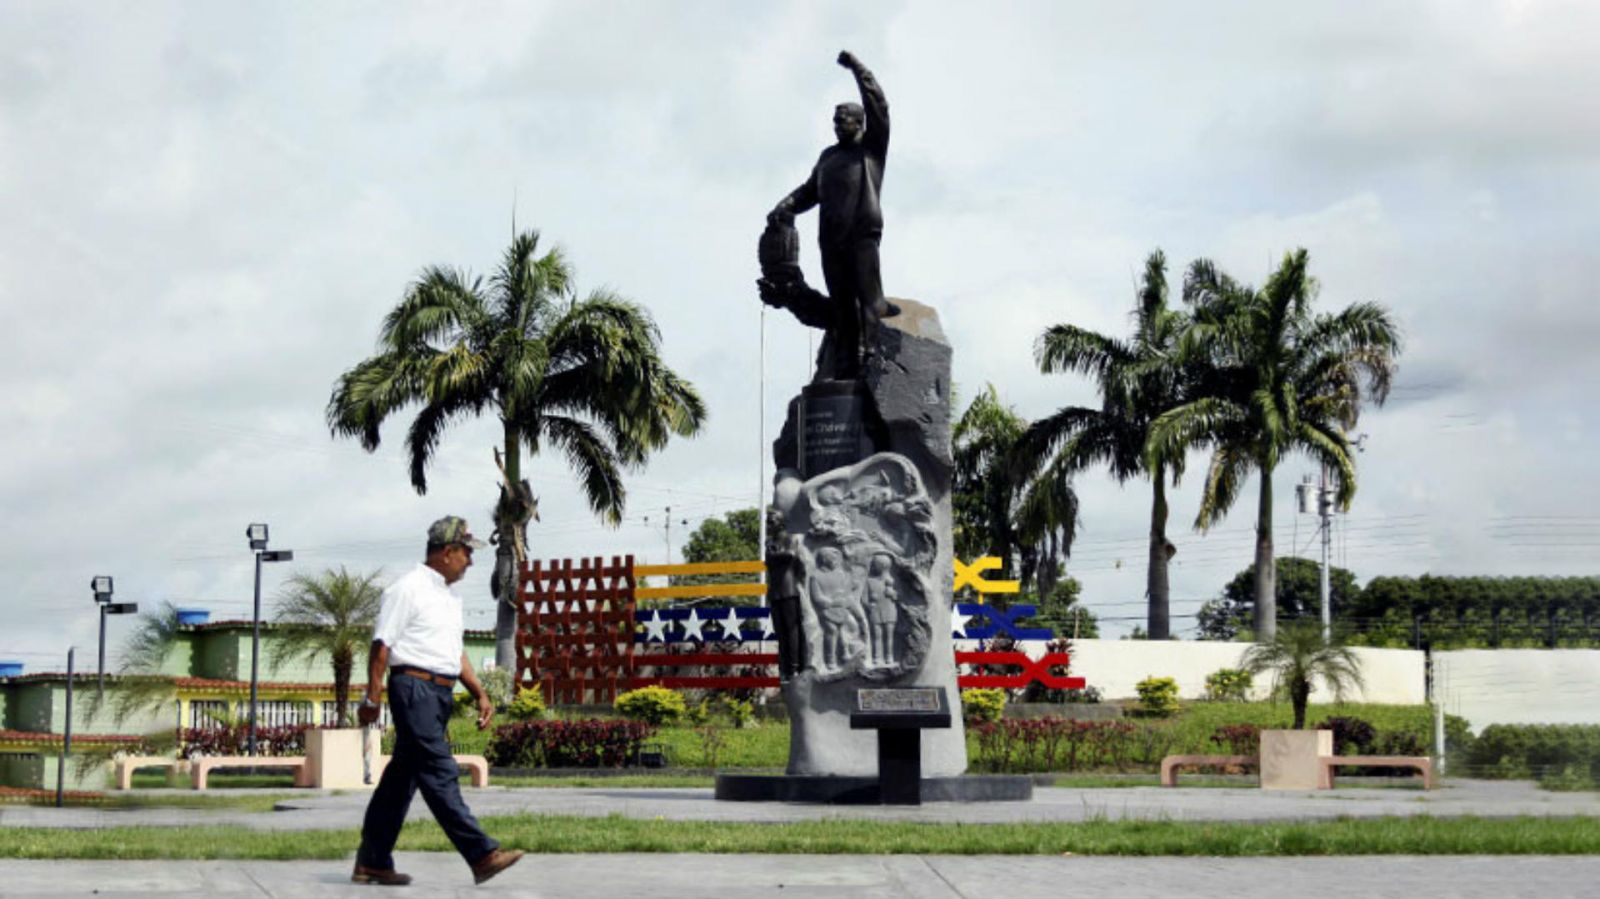 Destruyendo estatuas de Chávez, avanzan protestas contra el régimen de Maduro 